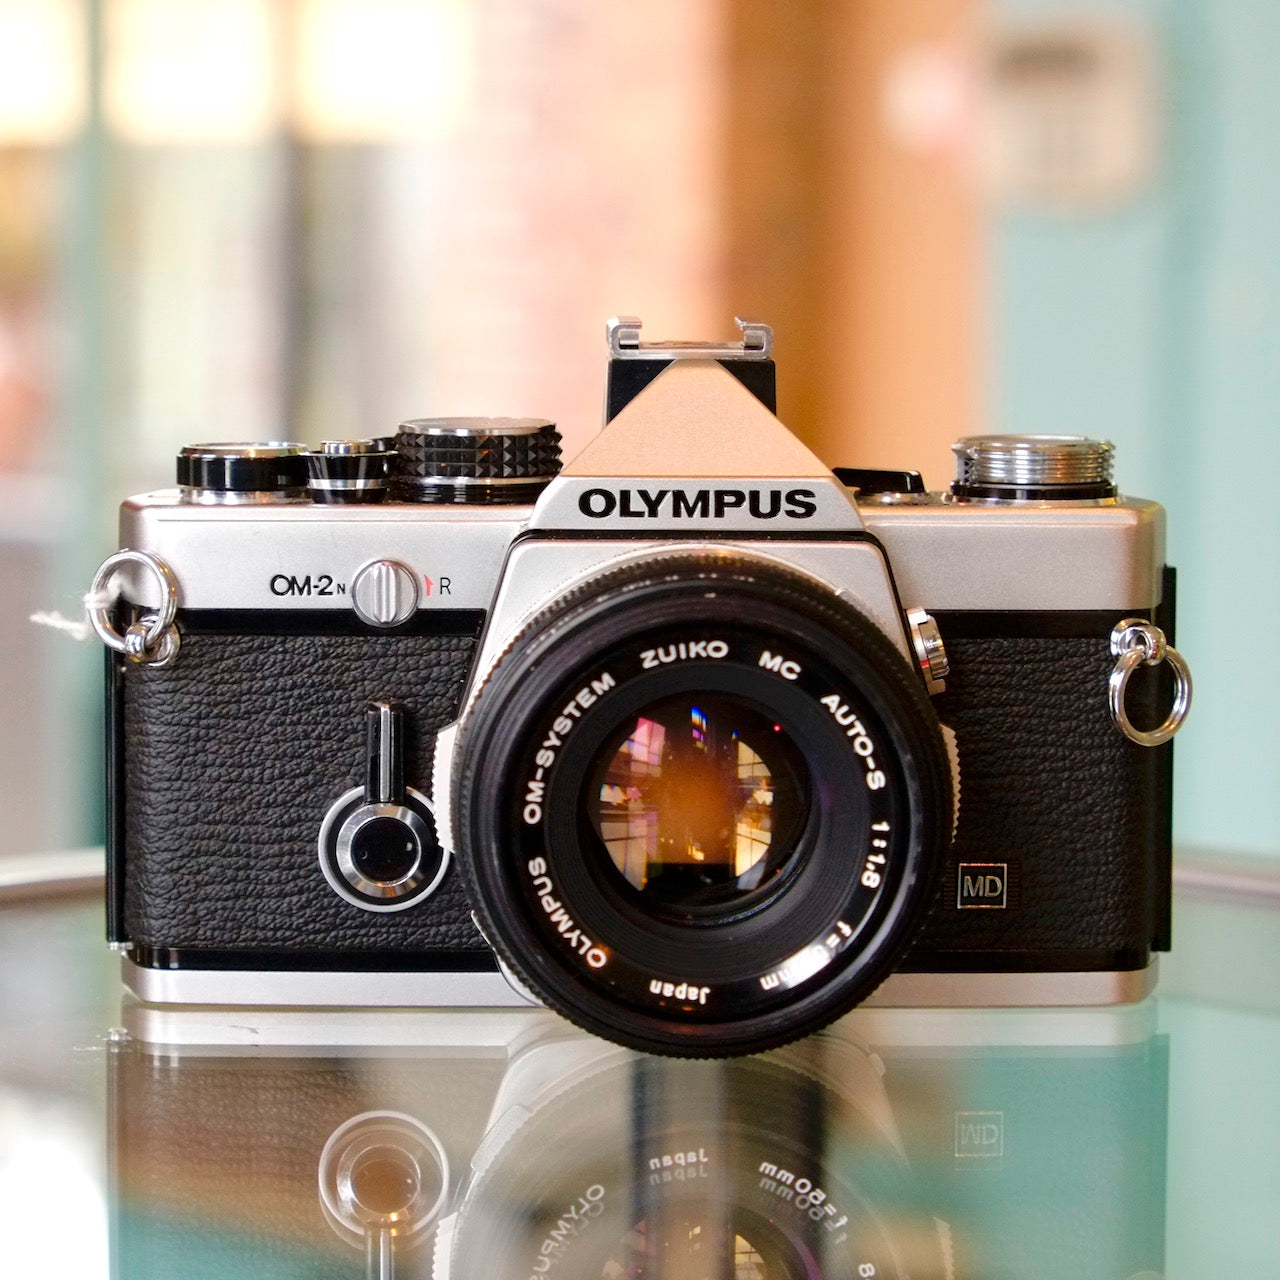 Olympus OM-2N with 50mm f1.8